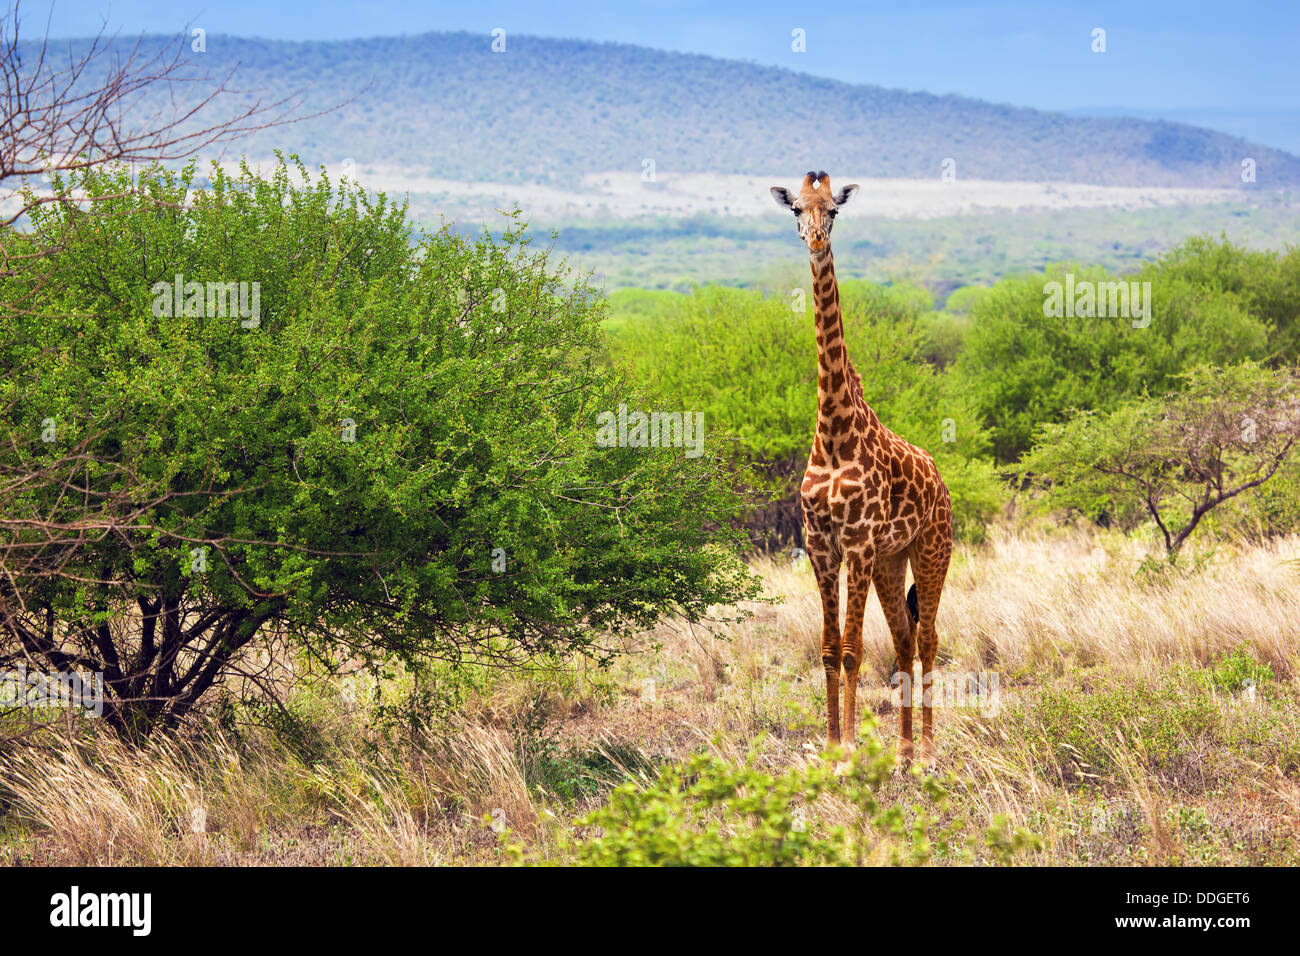 Girafe debout sur la savane dans les prairies du parc national de Tsavo Ouest, le Kenya, l'Afrique Banque D'Images